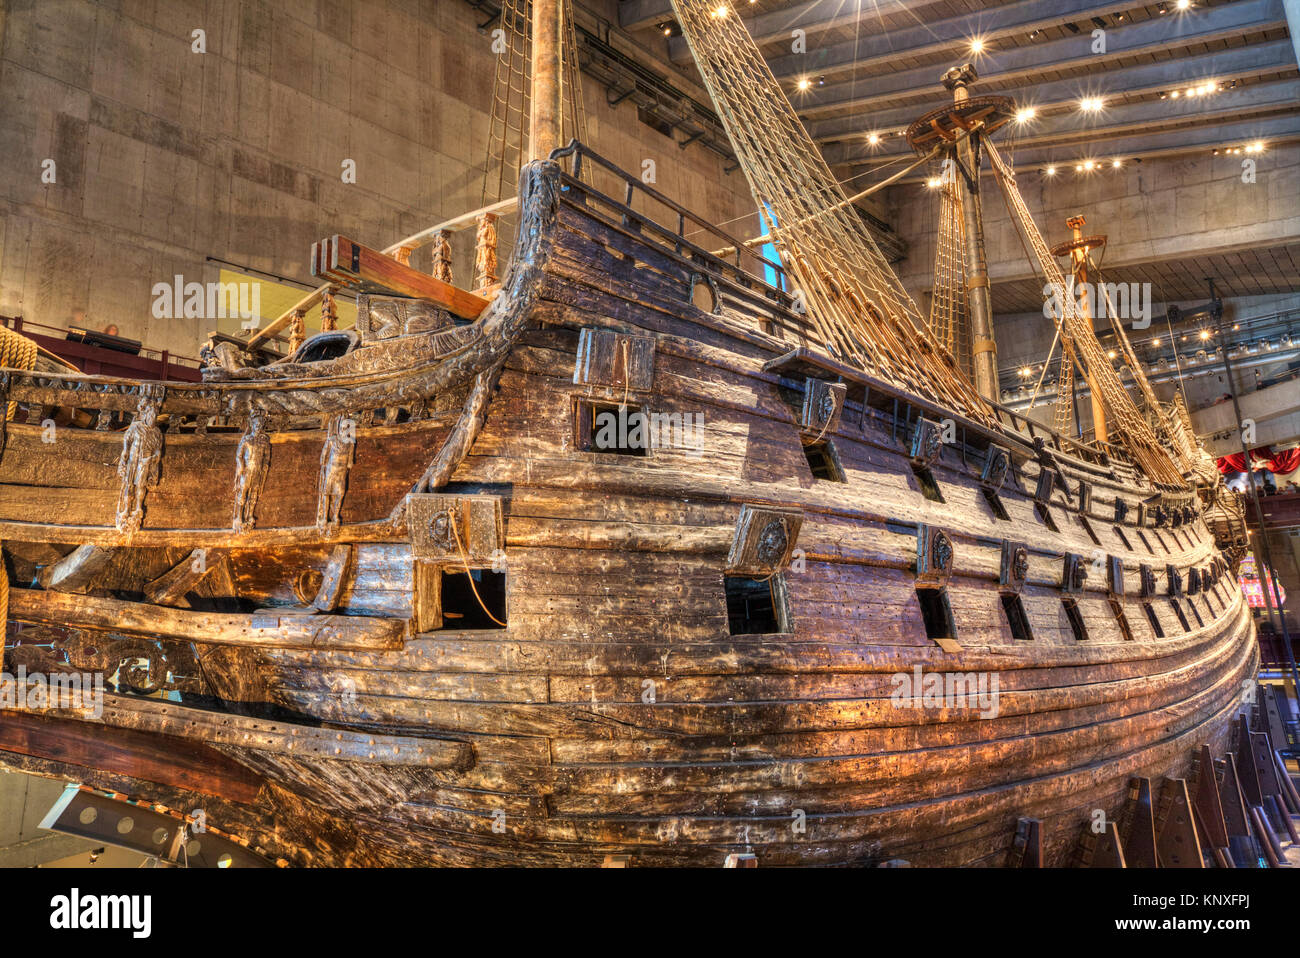 Navire de guerre du 17ème siècle, le Musée Maritime Vasa (Vasamseet), l'île de Djurgarden, Stockholm, Suède Banque D'Images